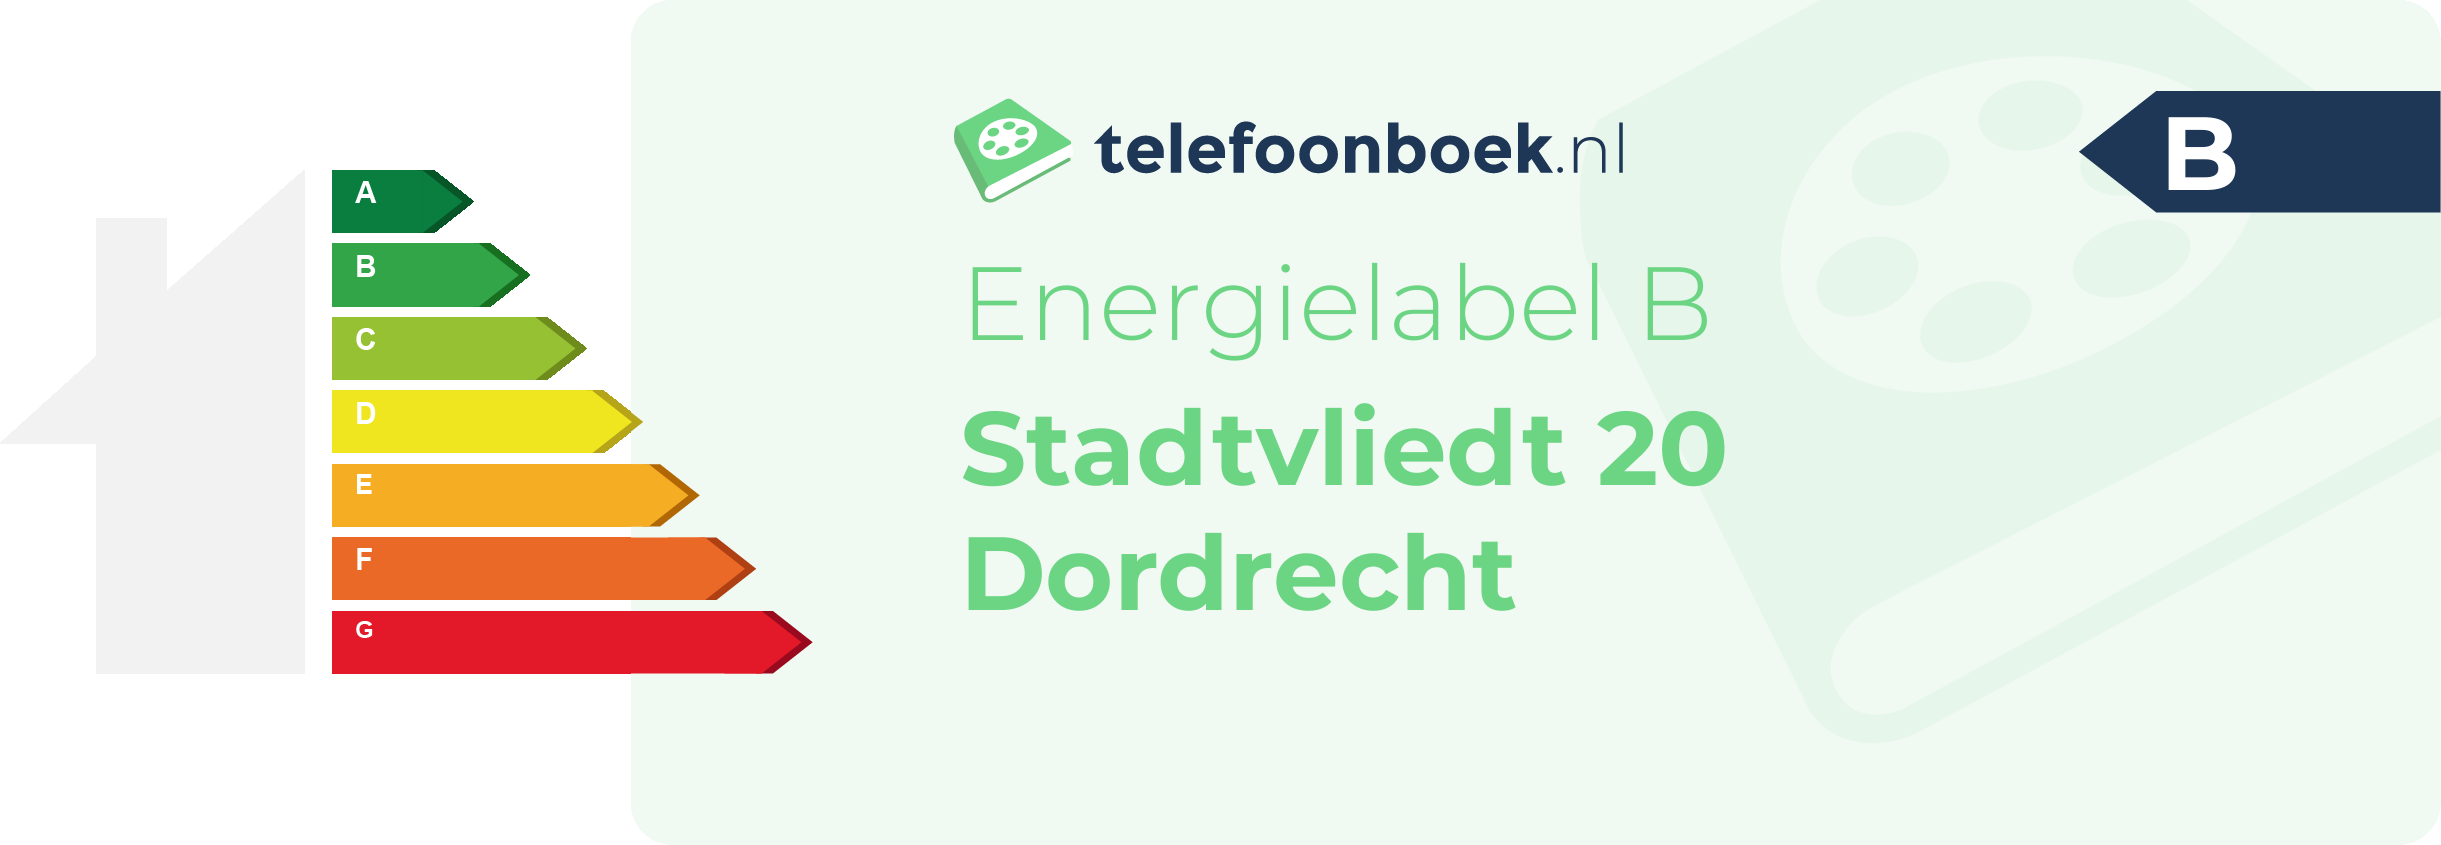 Energielabel Stadtvliedt 20 Dordrecht